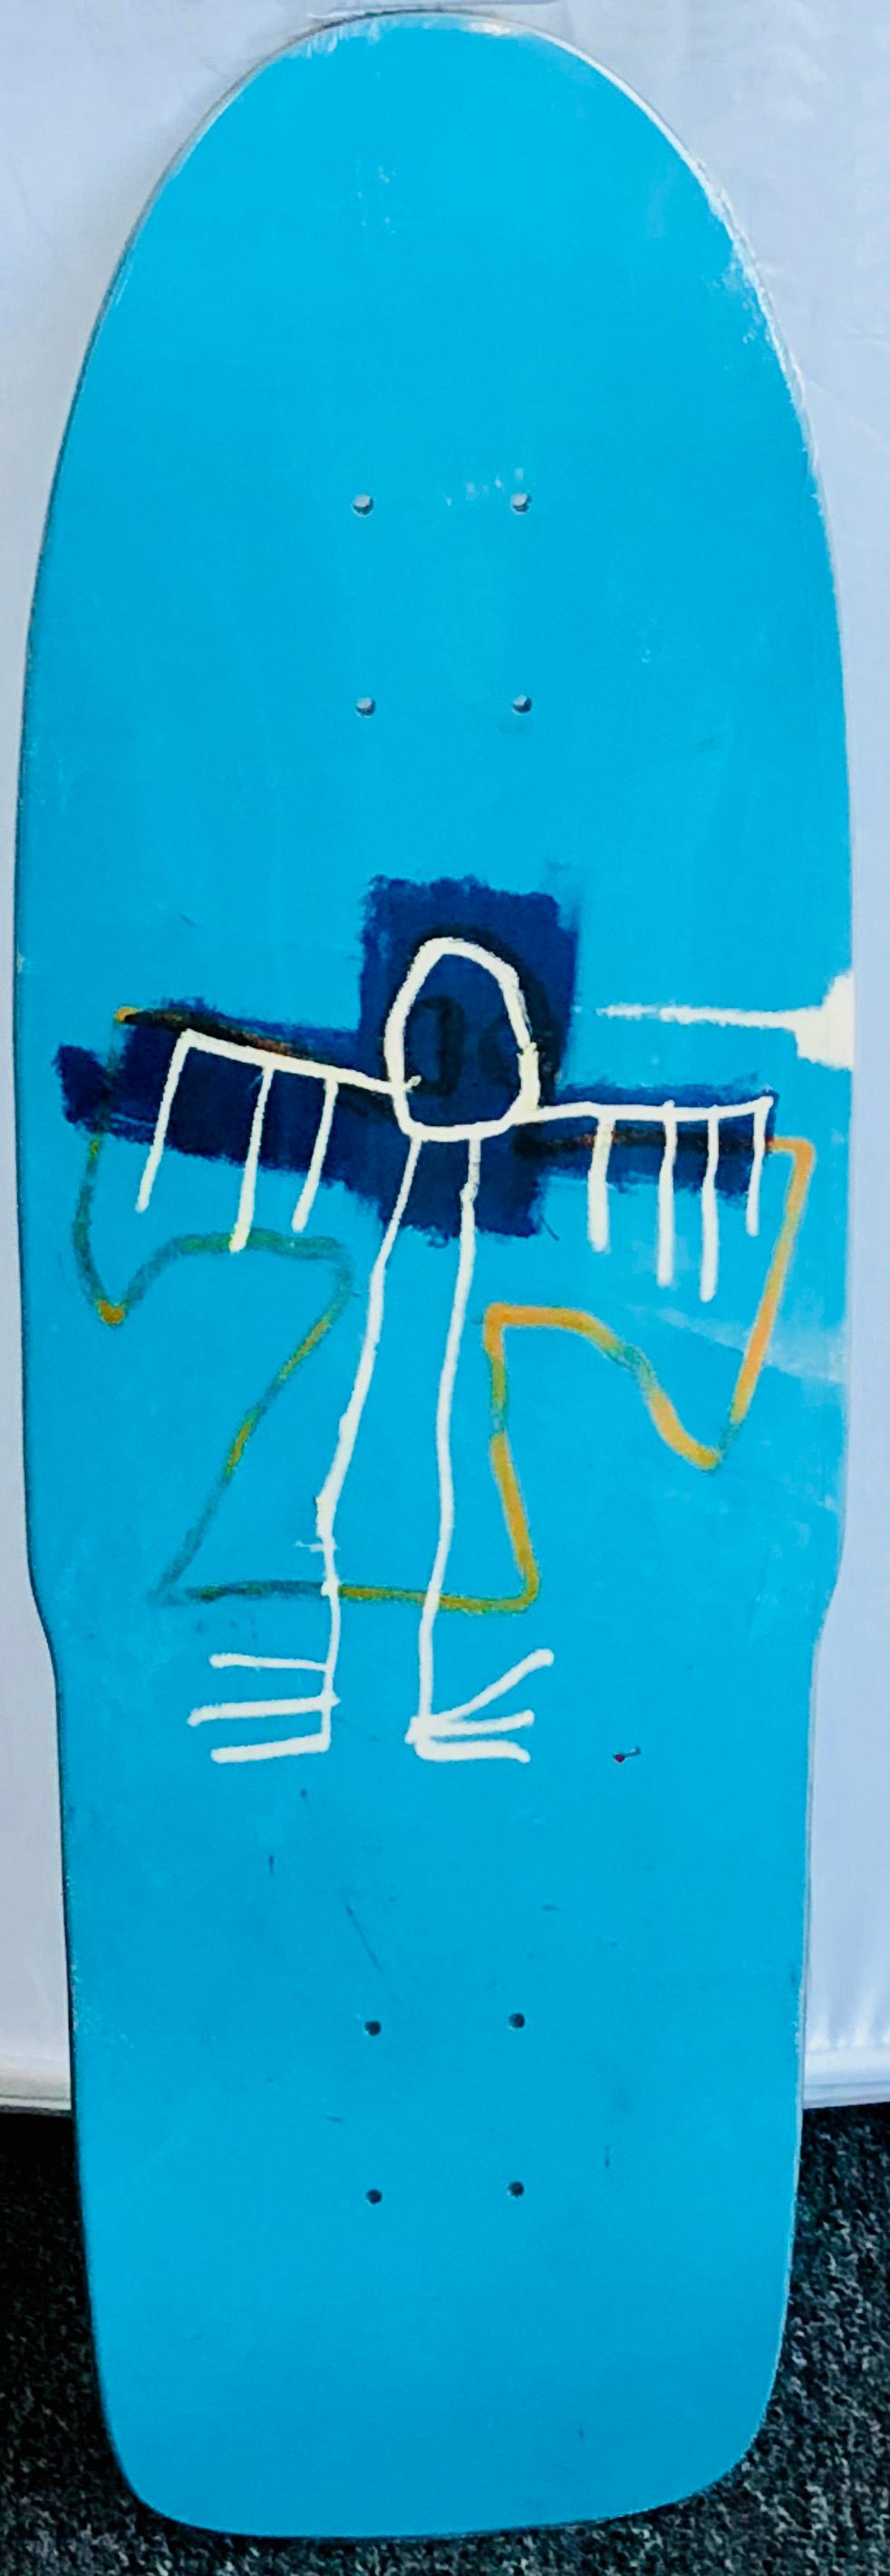 Jean-Michel Basquiat Skateboard Deck:
Limitierte Auflage des Skate-Decks, lizenziert vom Estate of Jean Michel Basquiat in Zusammenarbeit mit Artestar im Jahr 2018, mit dem ikonischen Werk (ohne Titel) Angel aus den frühen Achtzigern. Einzigartige